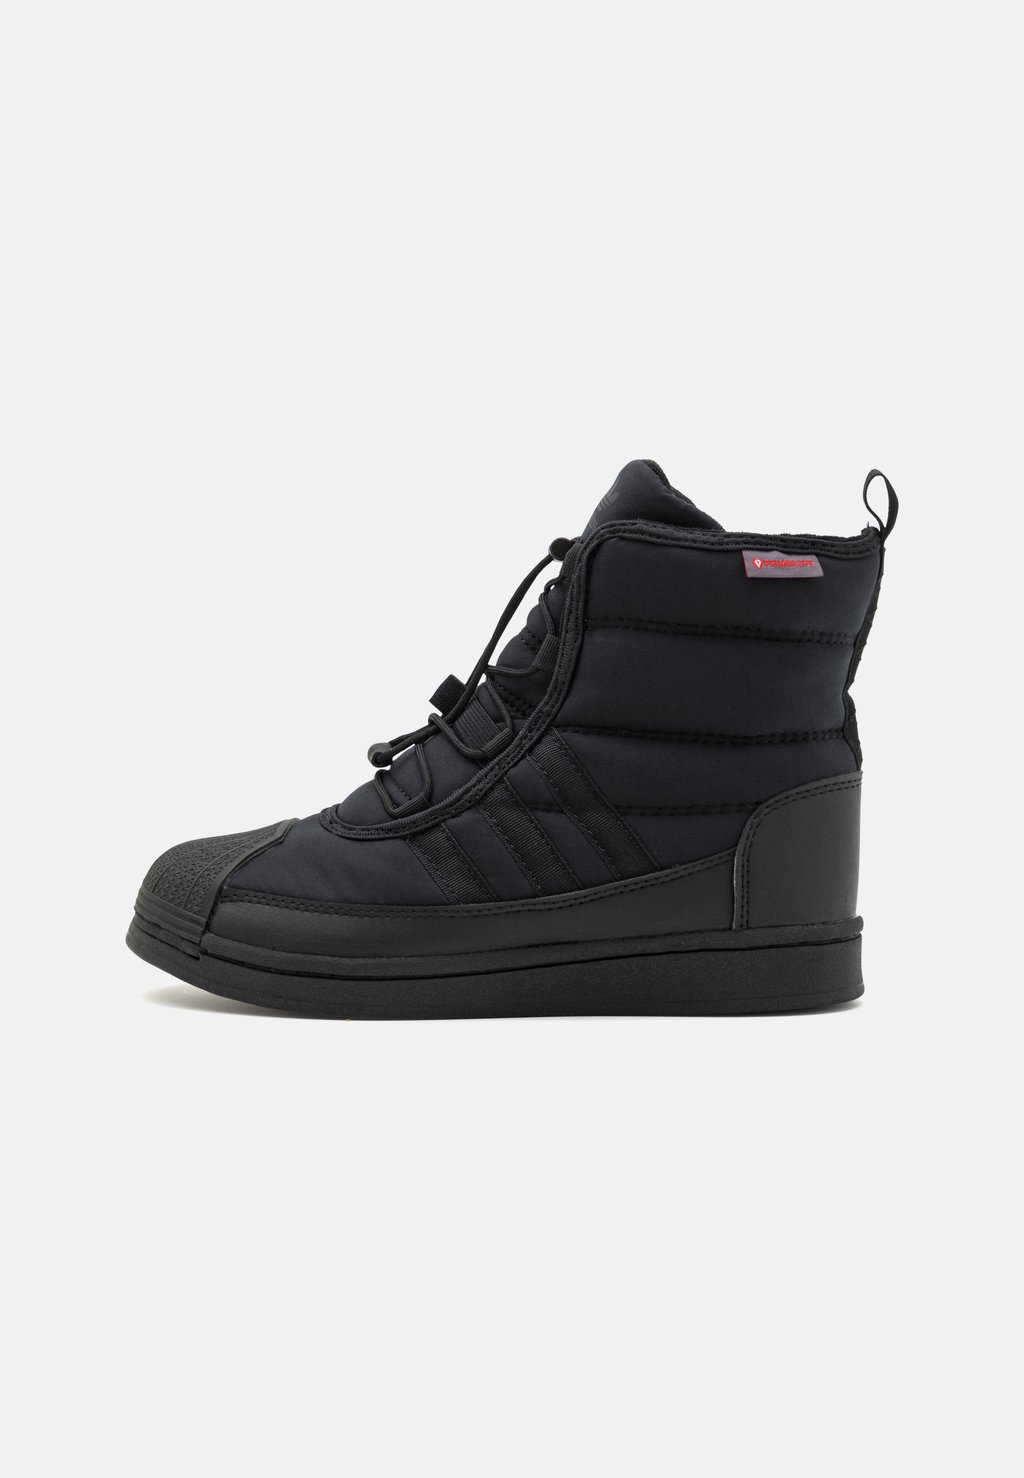 Зимние сапоги/зимние ботинки SUPERSTAR adidas Originals, цвет core black/footwear white